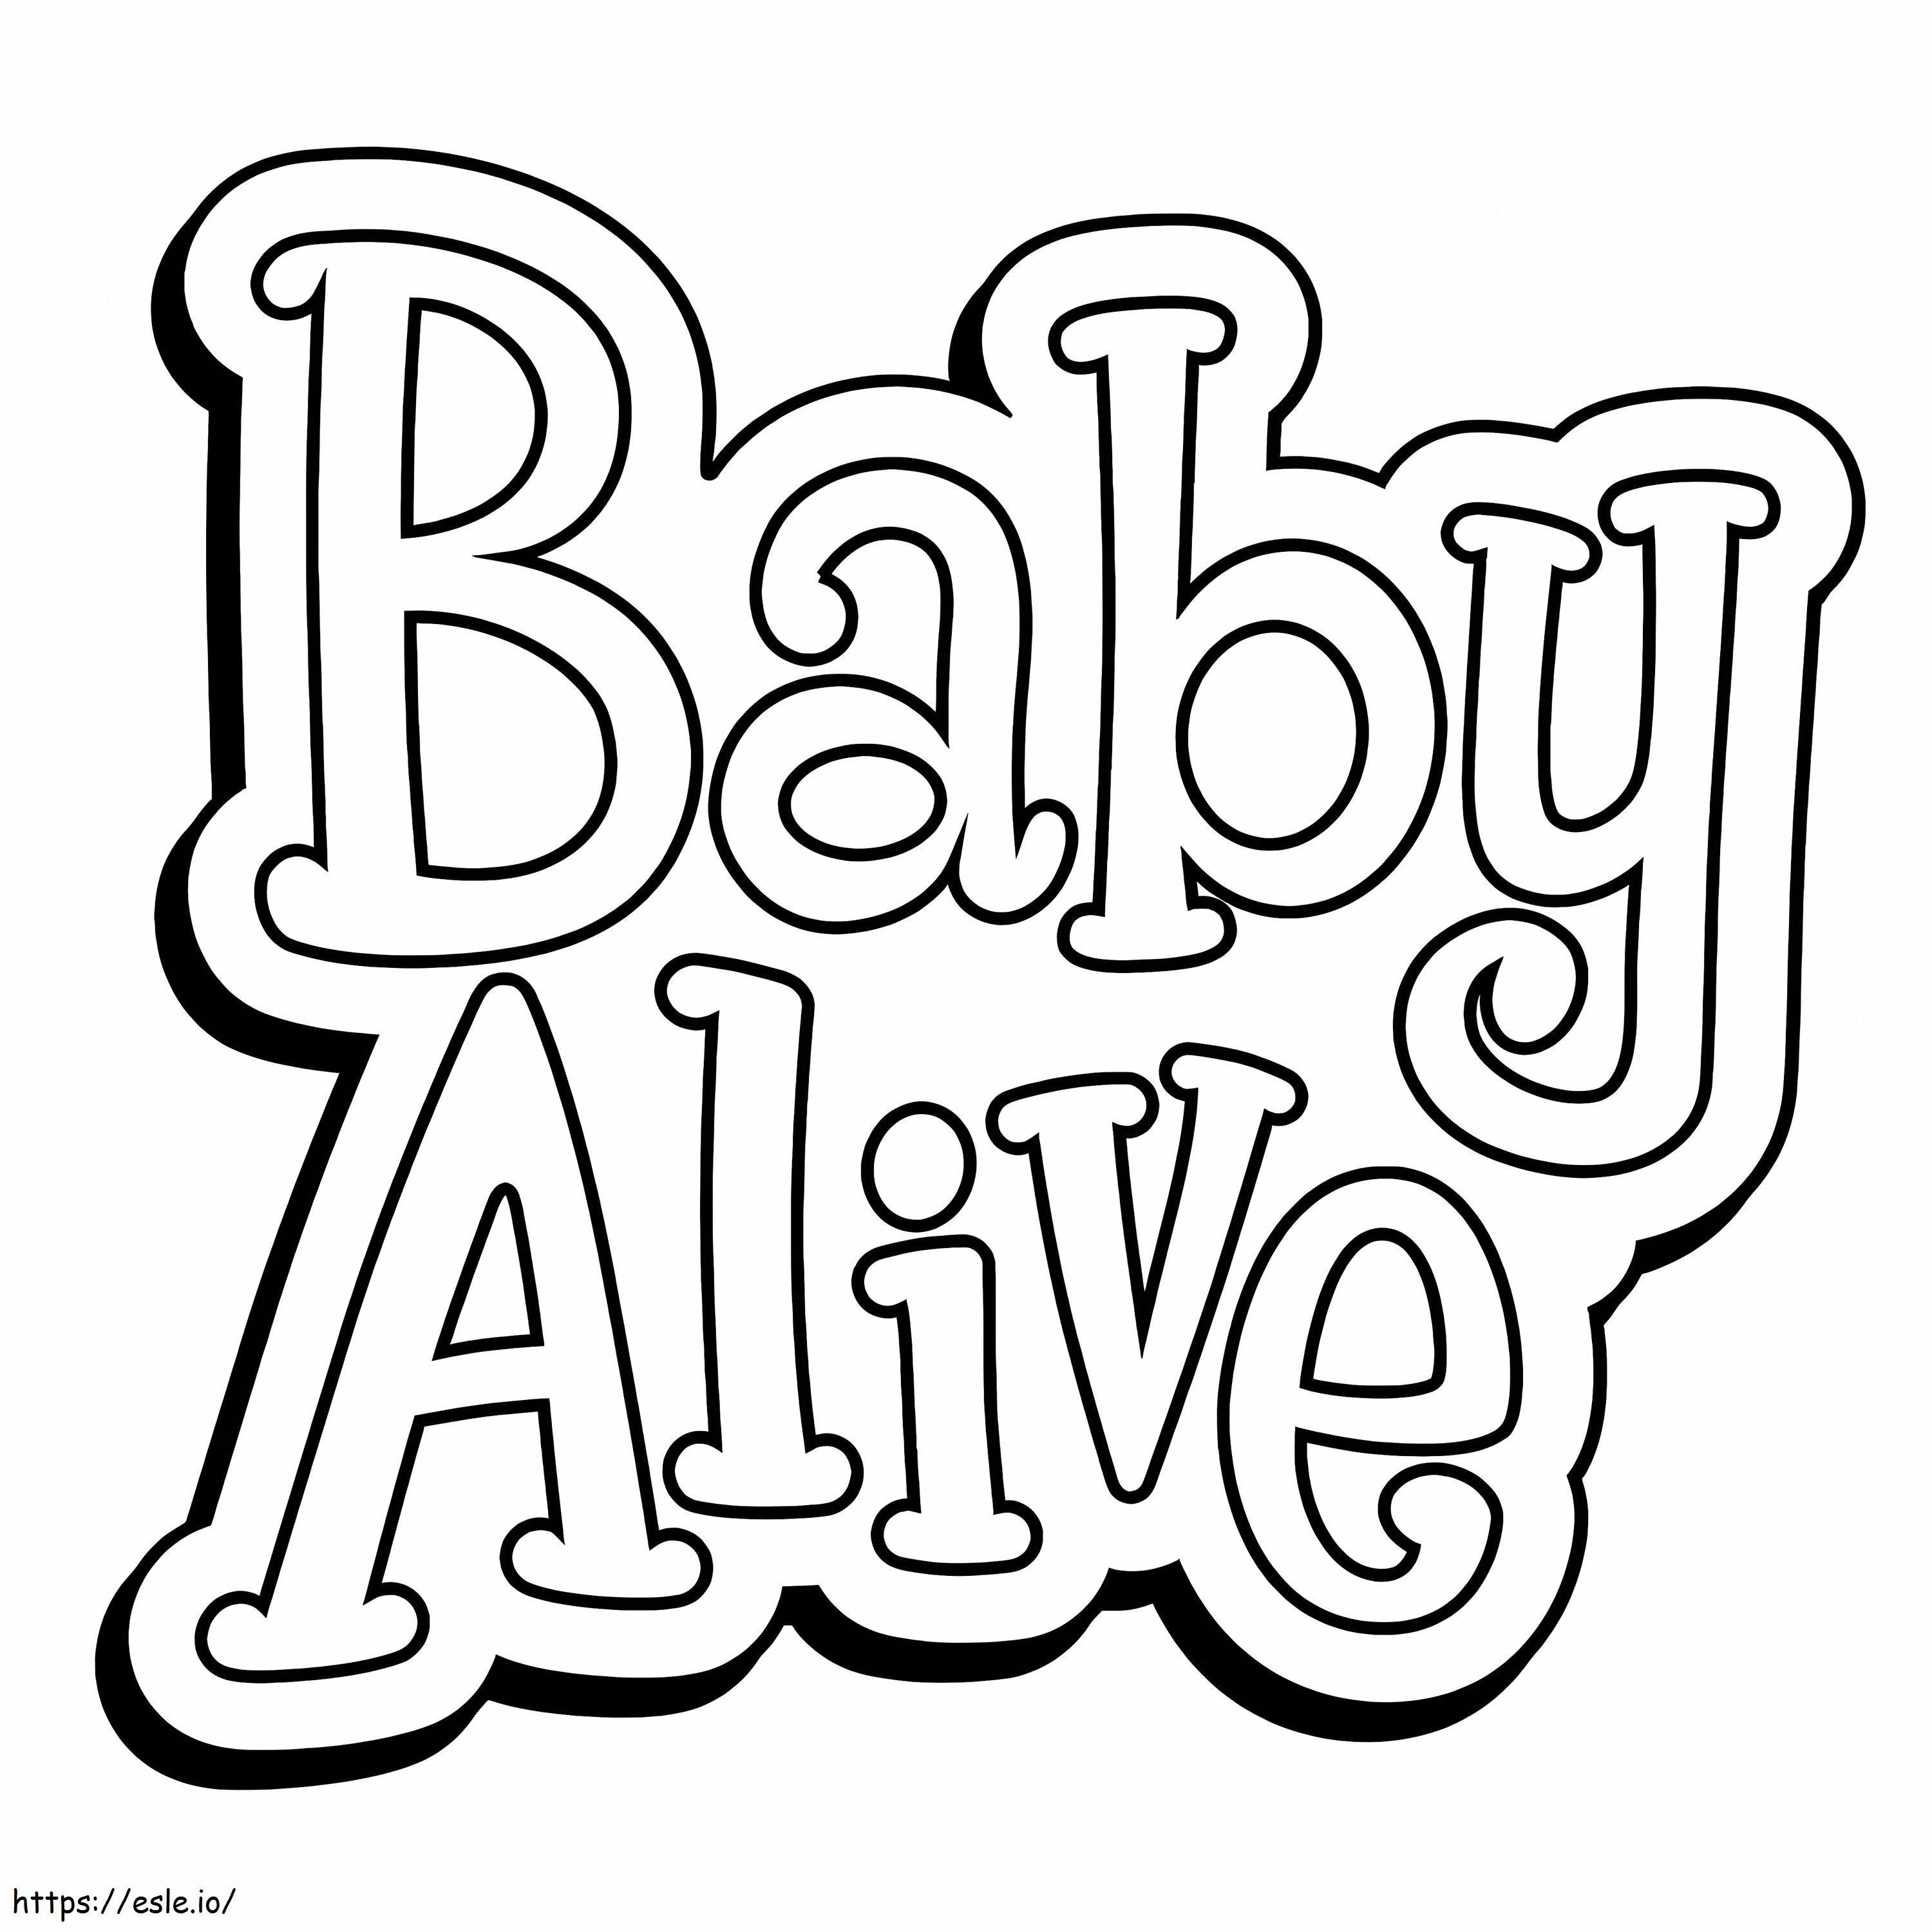 Logotipo de bebé vivo para colorear